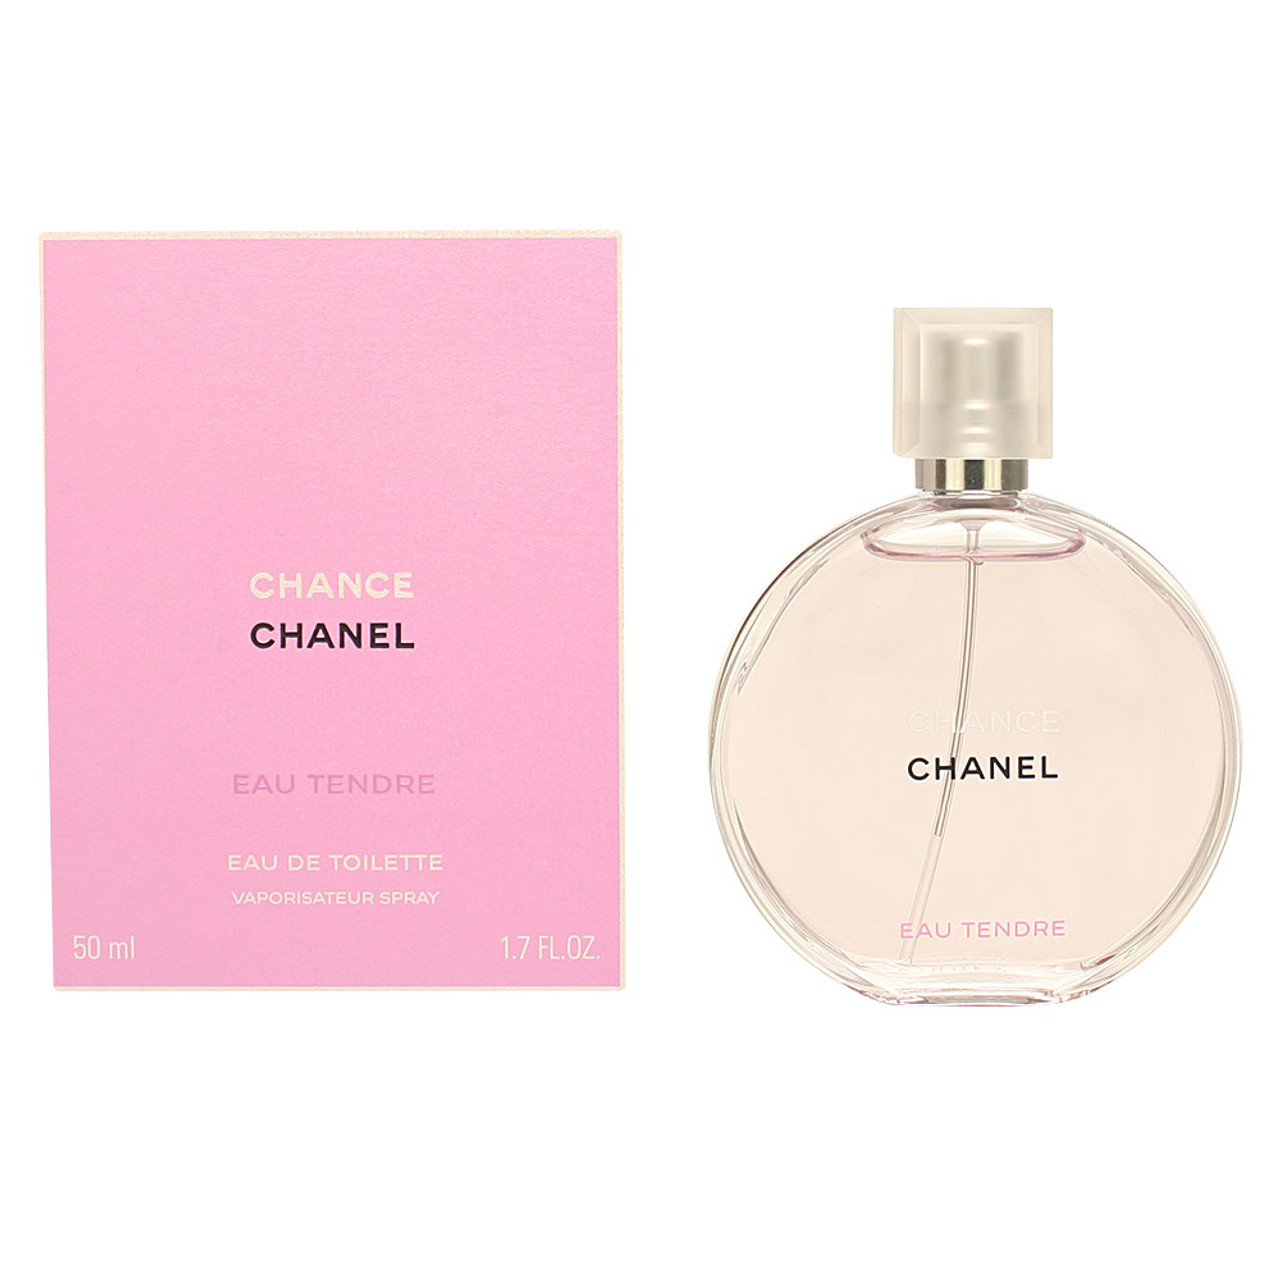 Chanel Chance 1.7 oz Eau de Parfum Spray